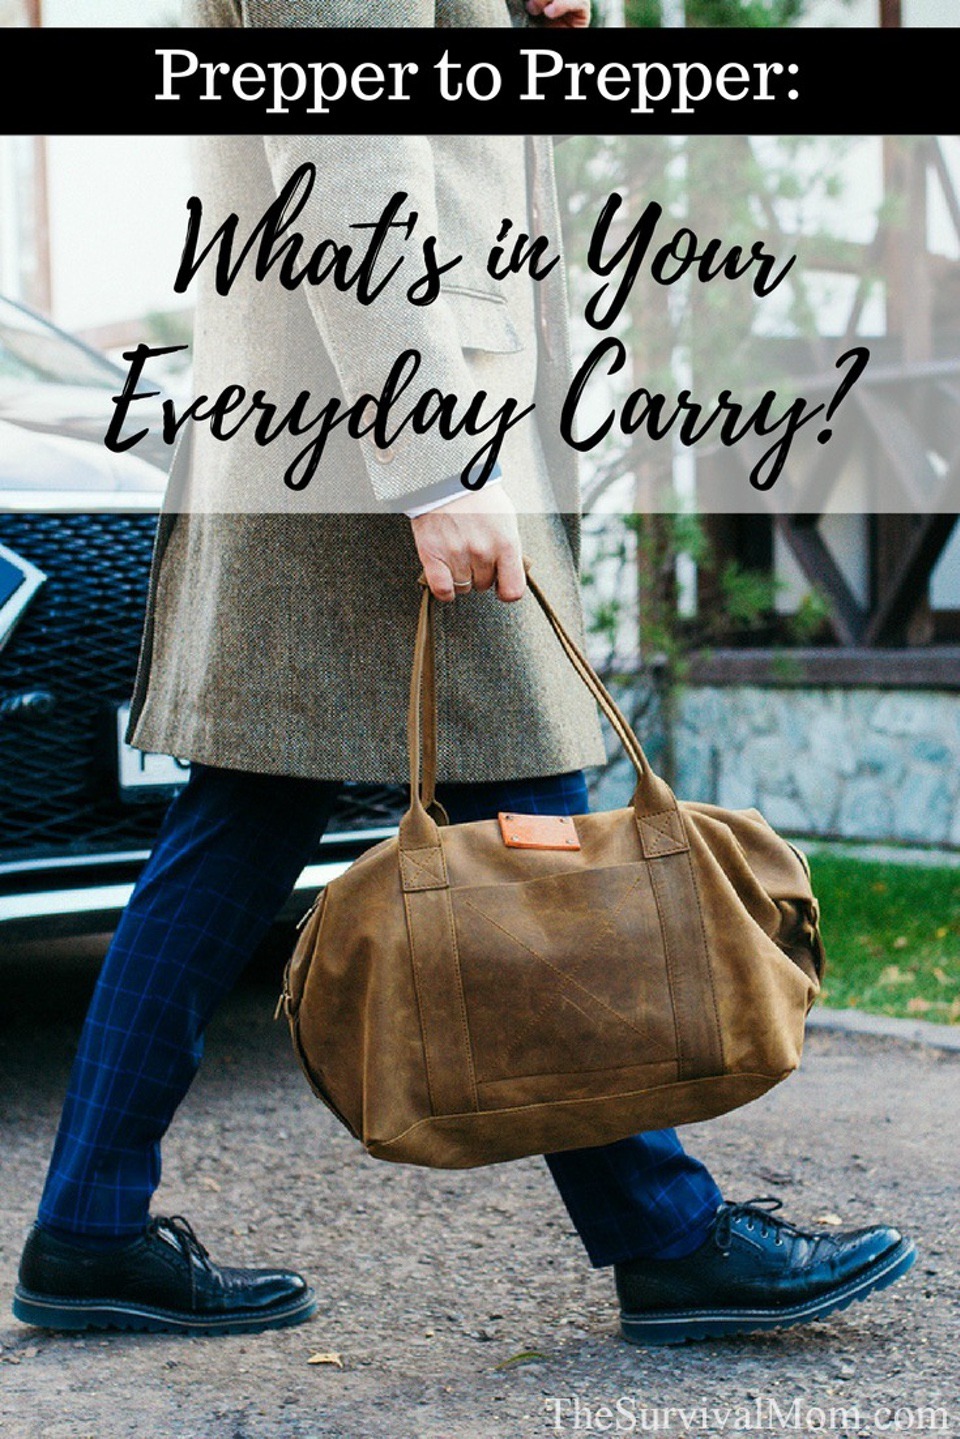 Prepper-to-Prepper_-everyday-carry Everyday Carry